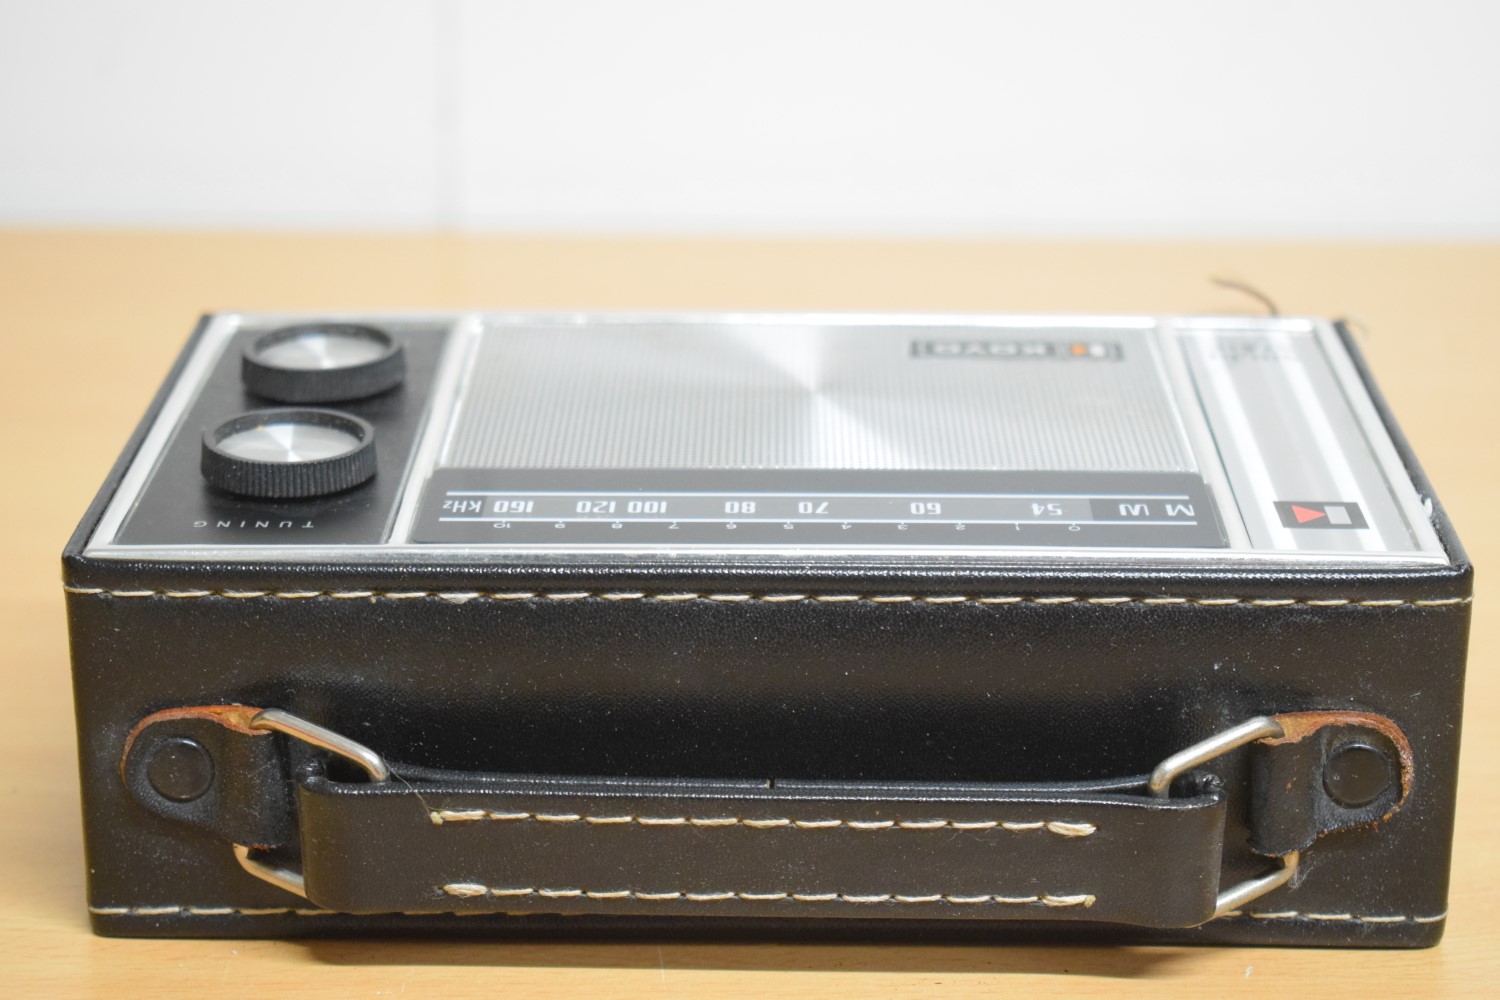 Koyo MO11 Transistor Radio – In original packaging